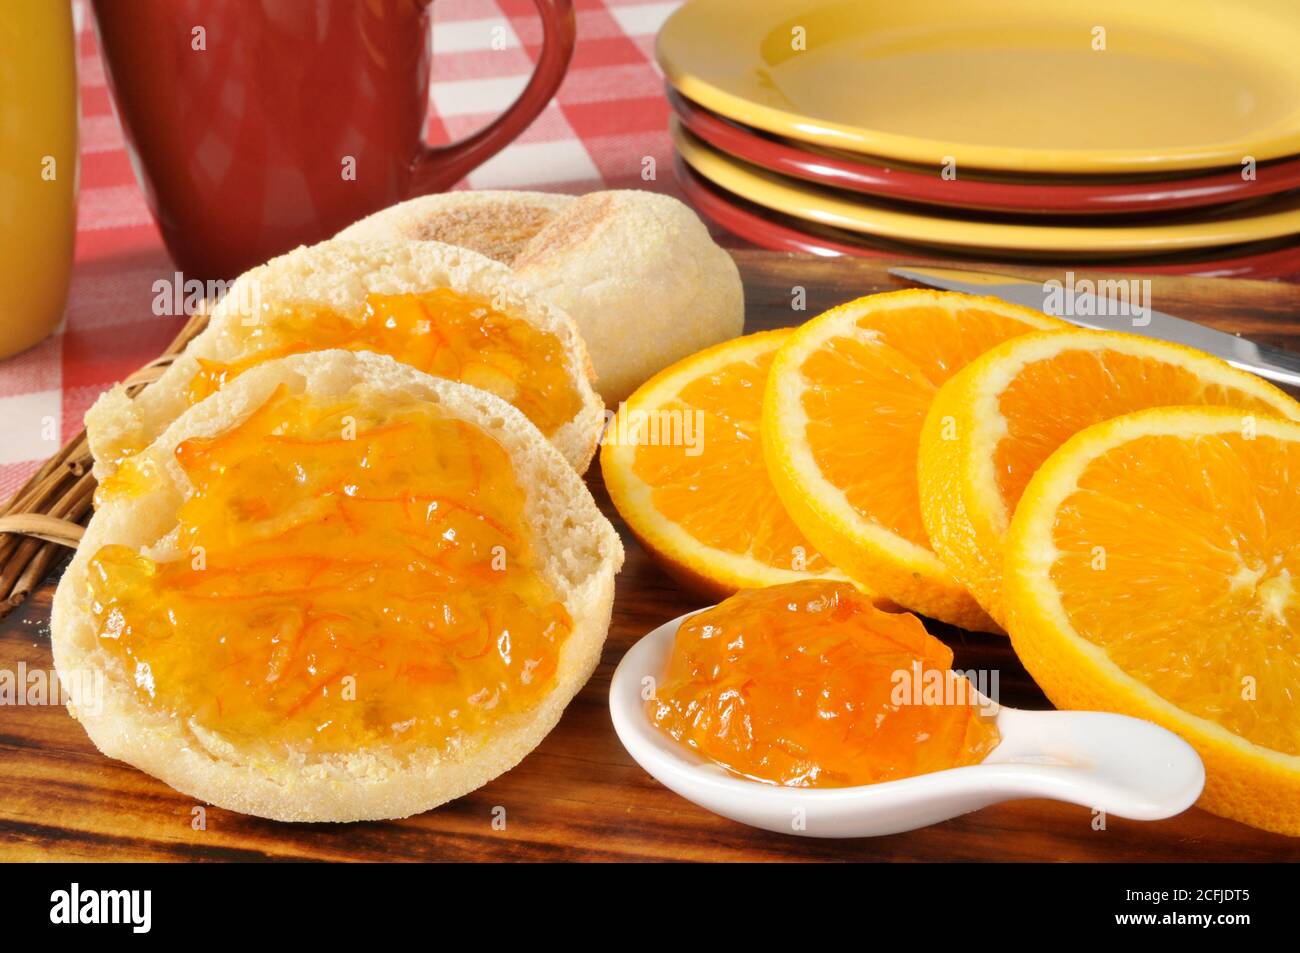 Un muffin inglese con marmellata d'arancia Foto Stock